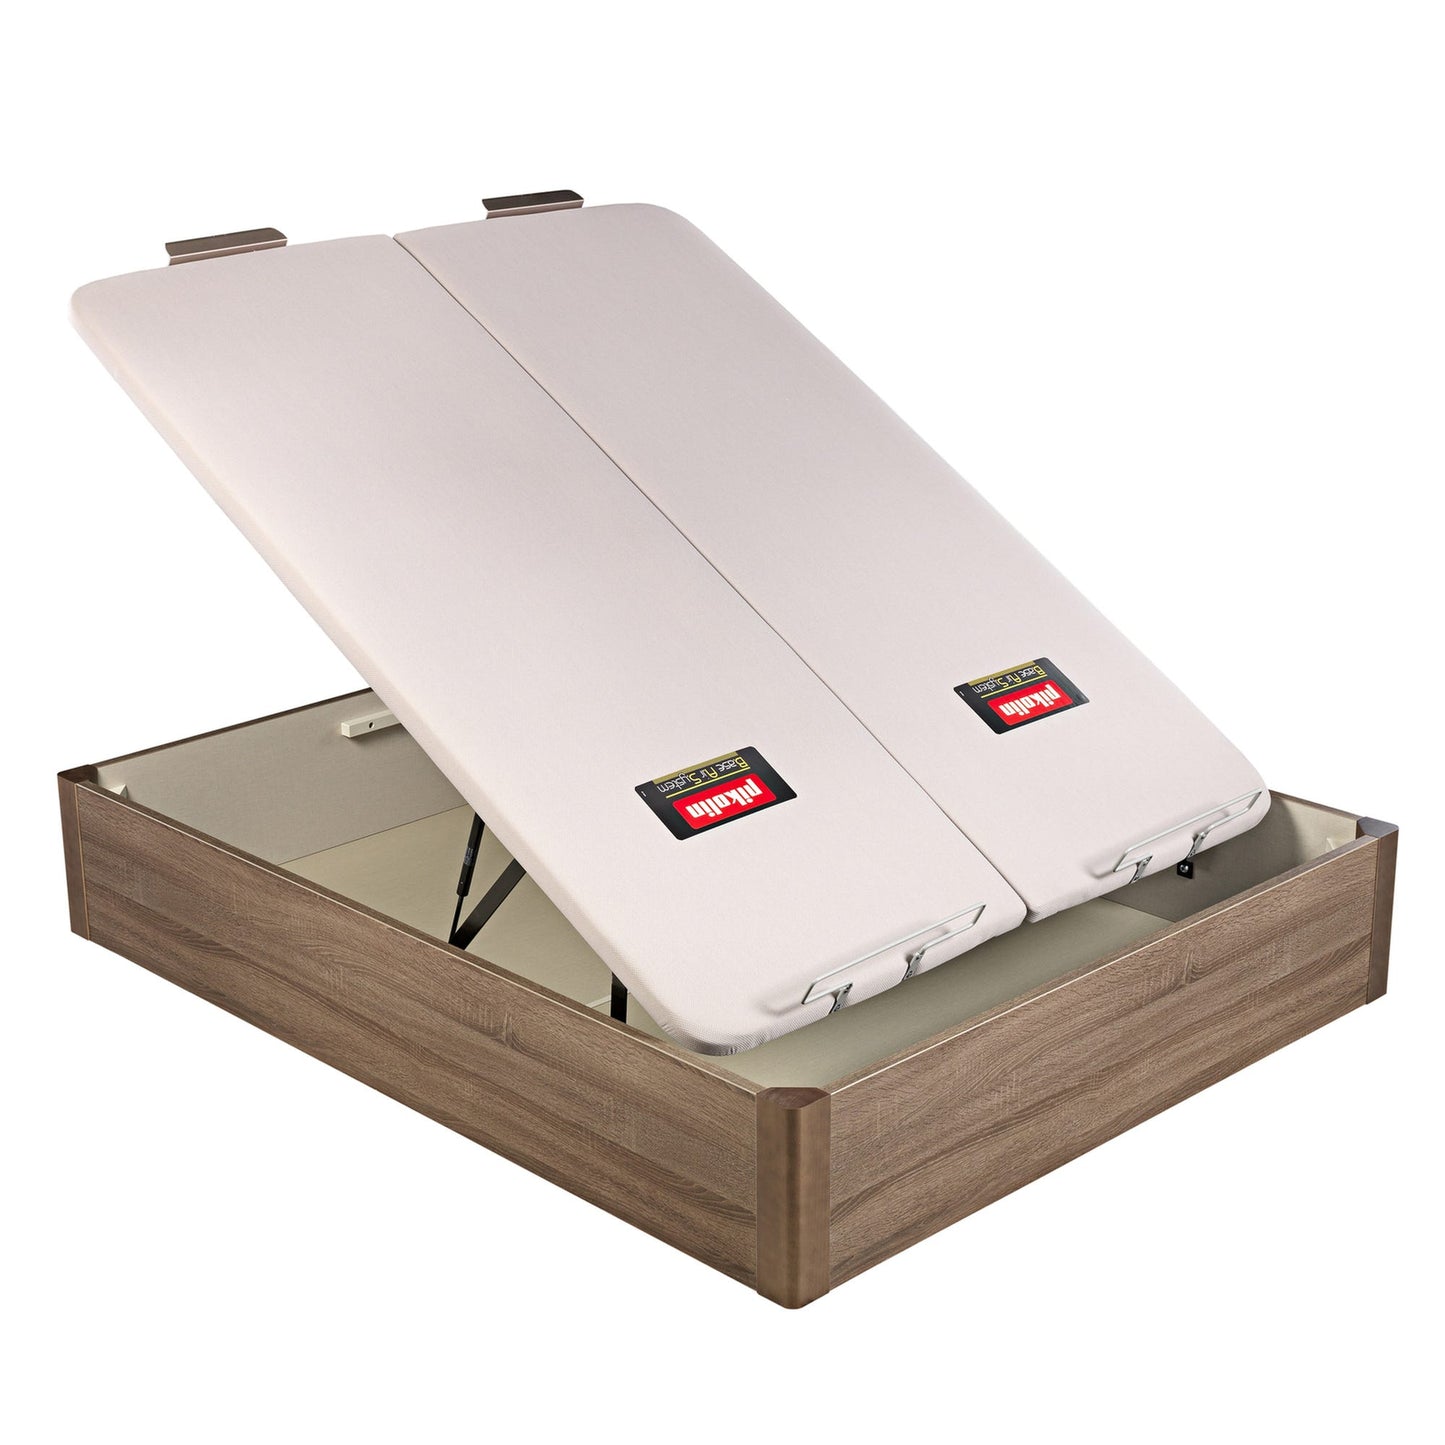 Canapé abatible de madera de tapa doble de color roble - DESIGN - 200x210